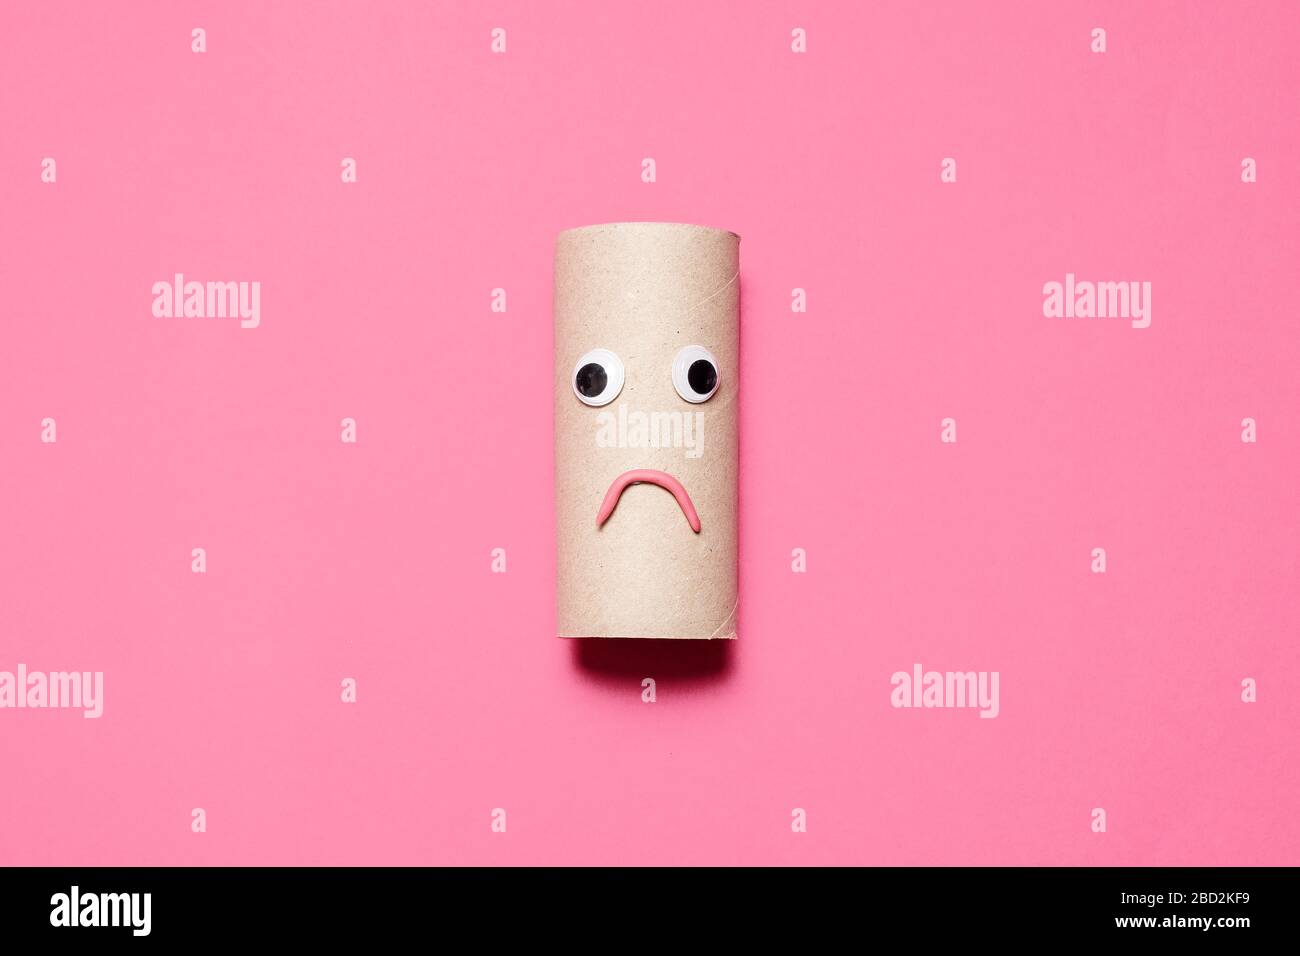 Rotolo vuoto triste e accigliato di carta igienica con occhi e bocca googly su uno sfondo rosa con spazio per le copie e spazio per il testo. Foto Stock